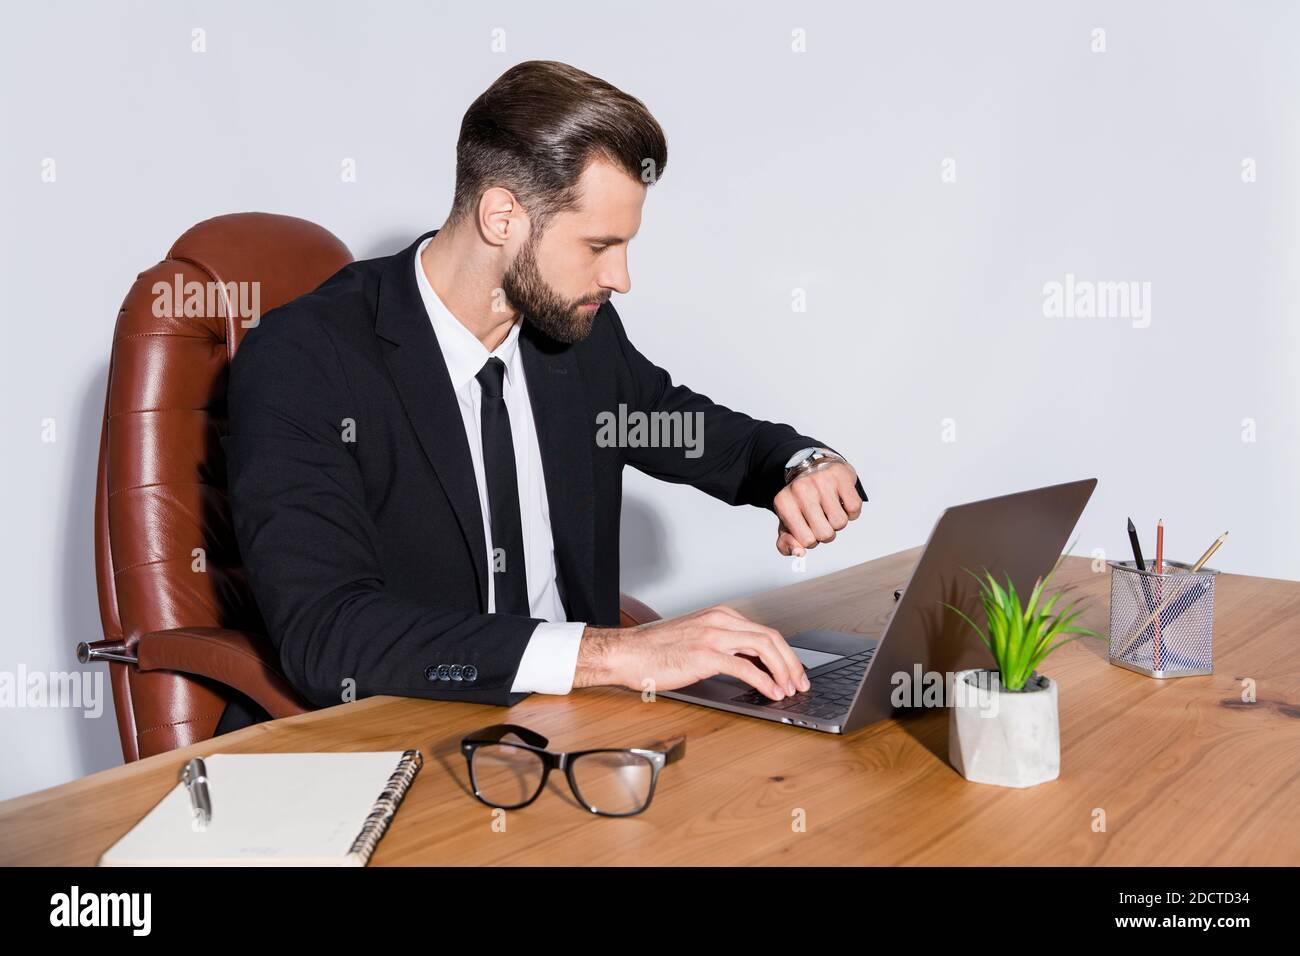 Quelle heure est-il photo de profil de beau homme d'affaires bloc-notes  travail de table heures supplémentaires vérifier temps montres main porter  blazer chemise cravate costume chaise assise Photo Stock - Alamy